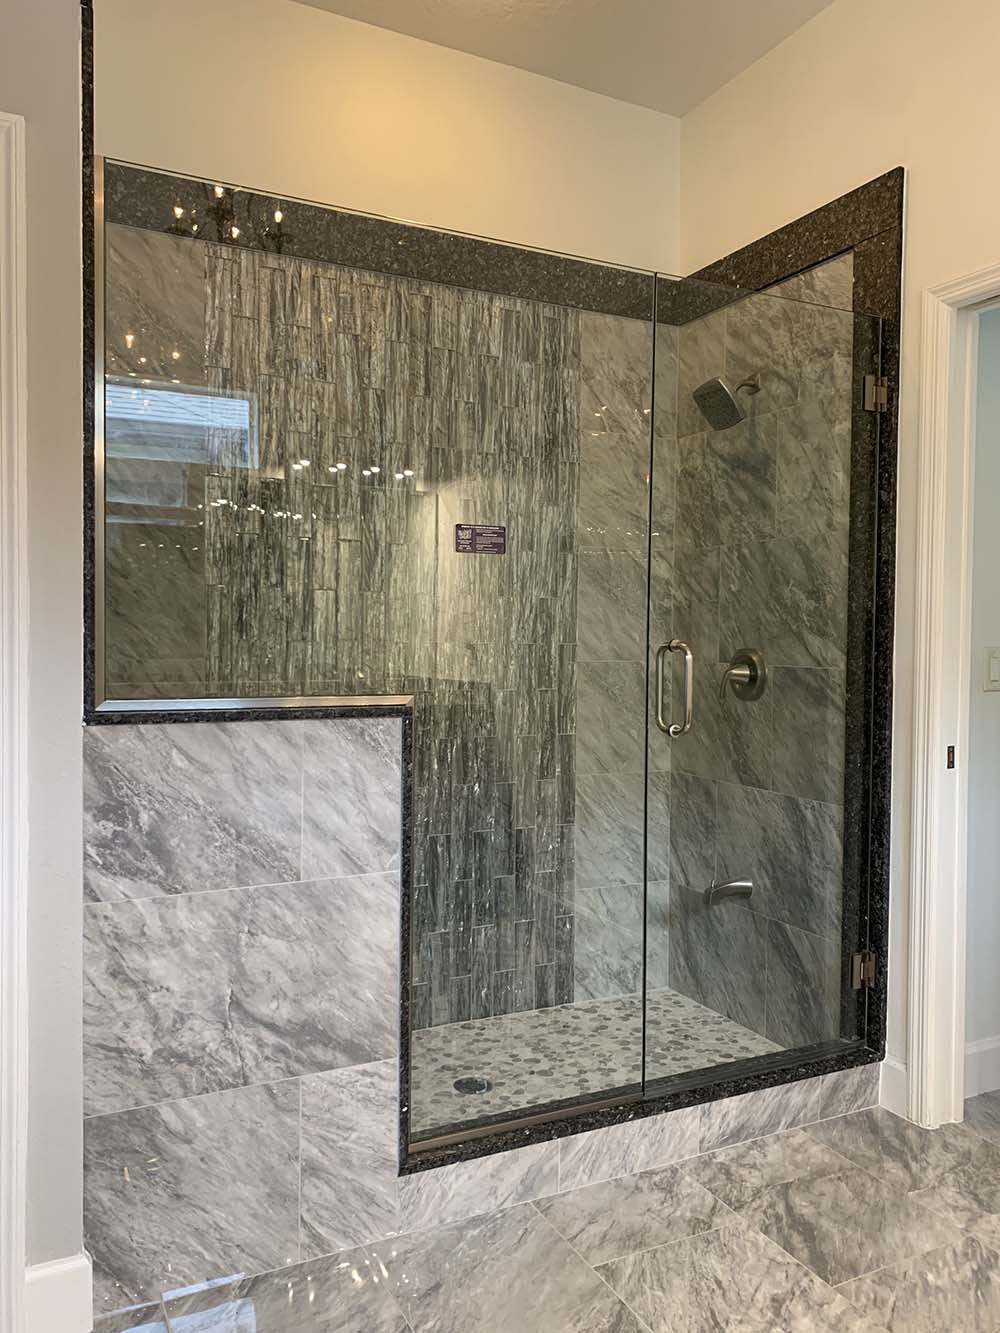 Shower door installed by Dixie Shower Doors